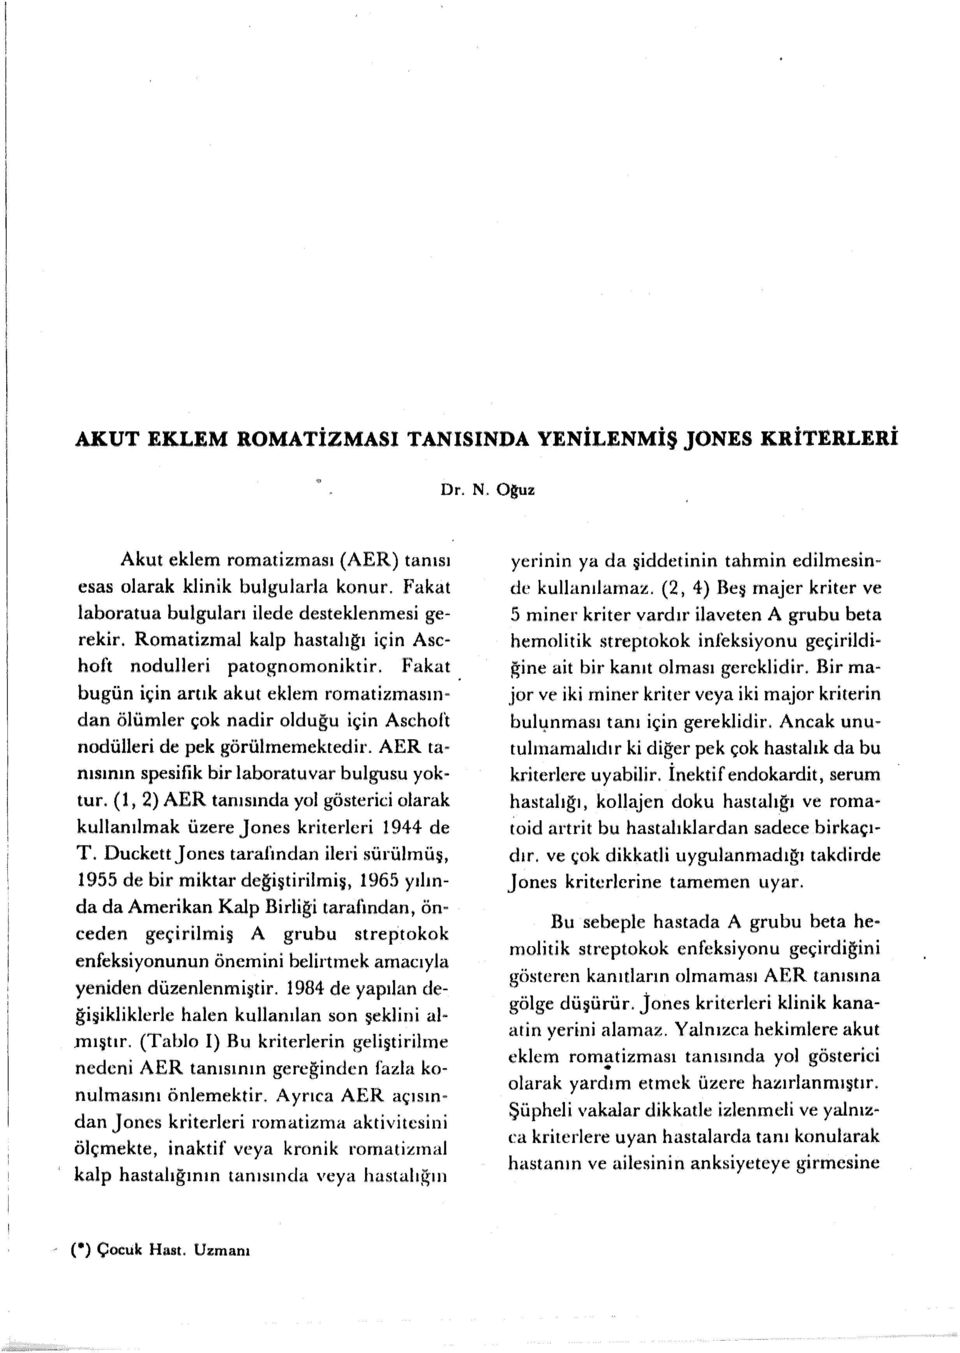 AER tanısının spesifik bir laboratuvar bulgusu yoktur. (1, 2) AER tanısında yol gösterici olarak kullanılmak üzere Jones kriterleri 1944 de T.